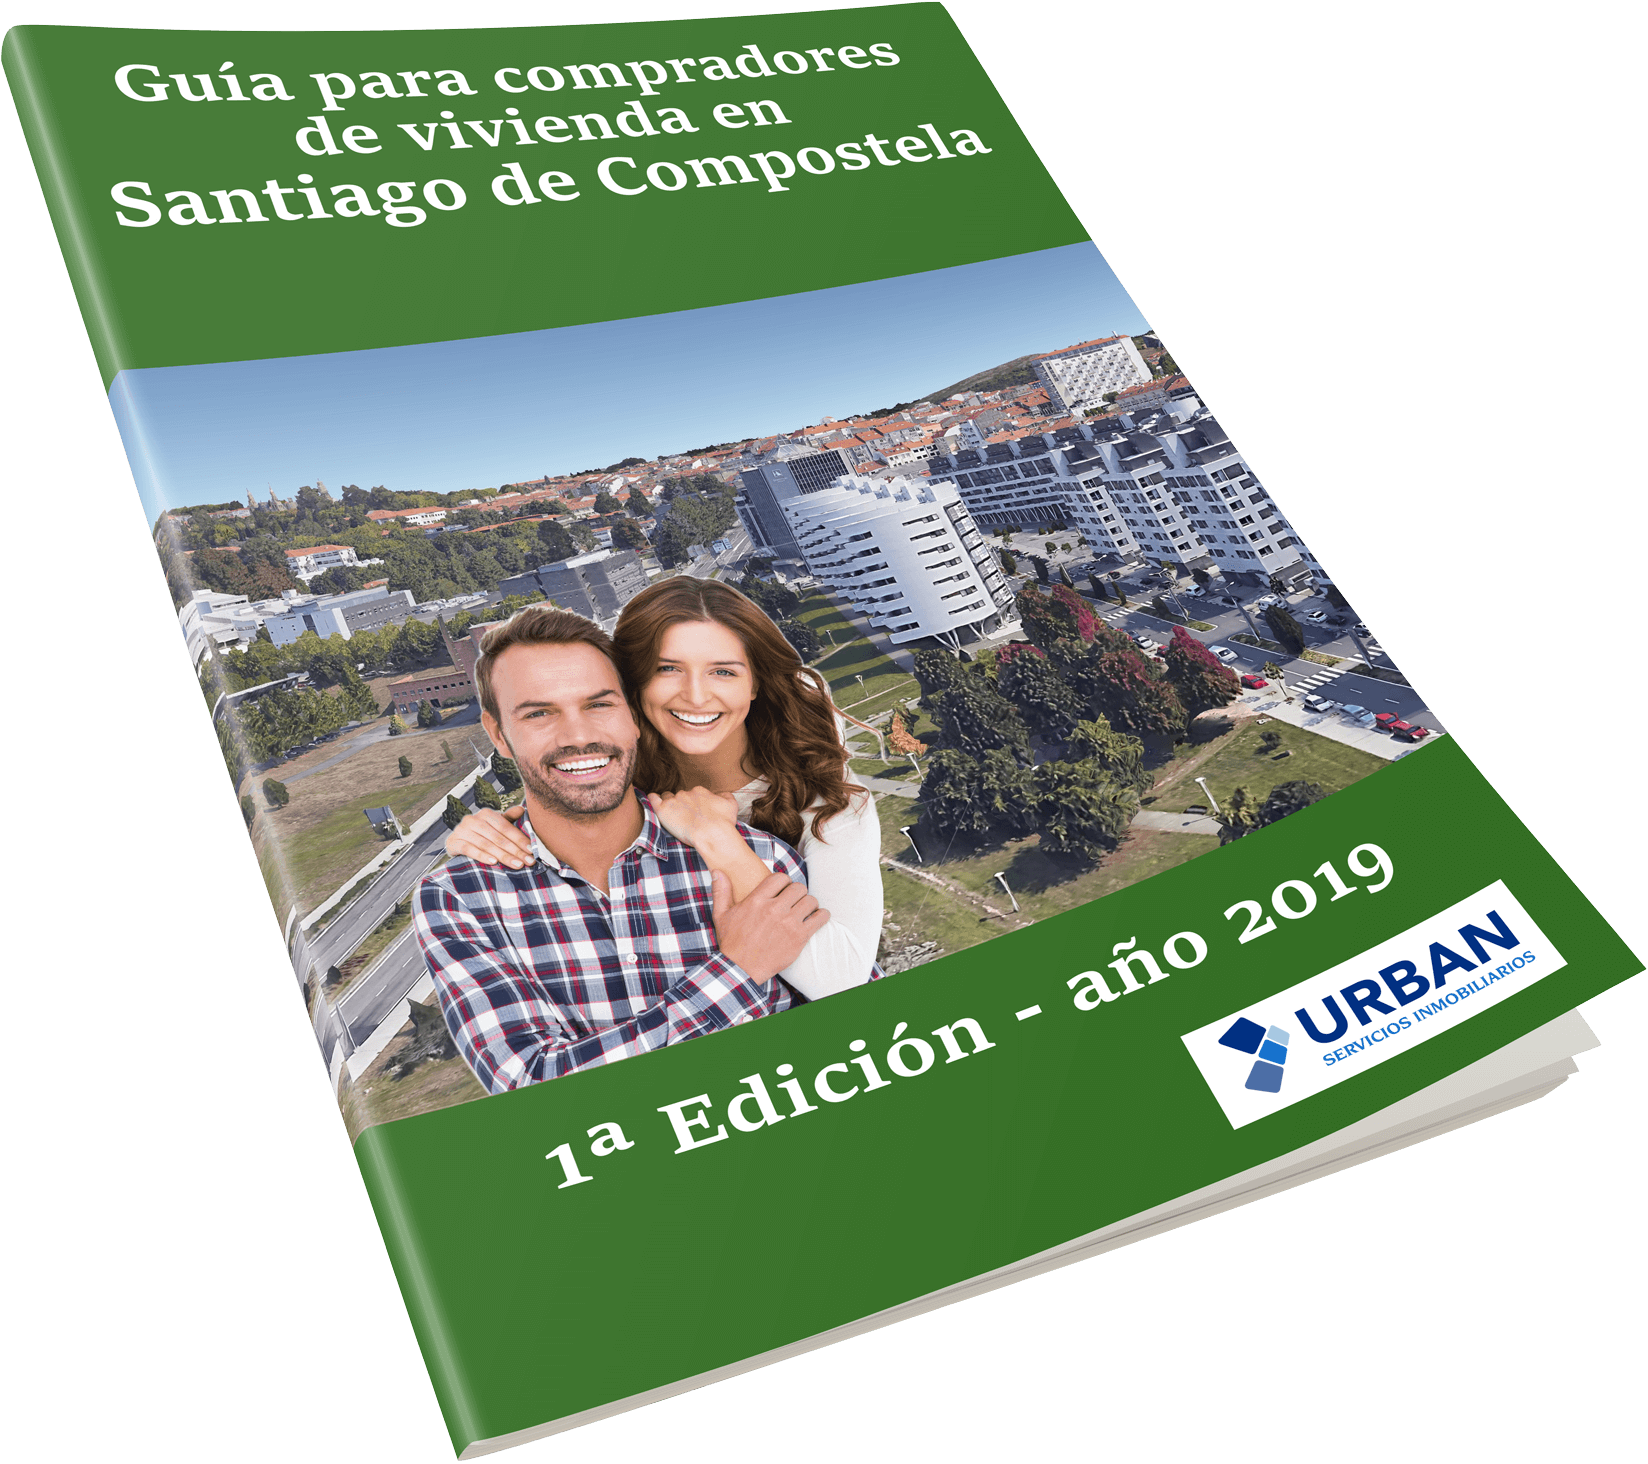 Los 7 consejos para comprar vivienda en Santiago de Compostela